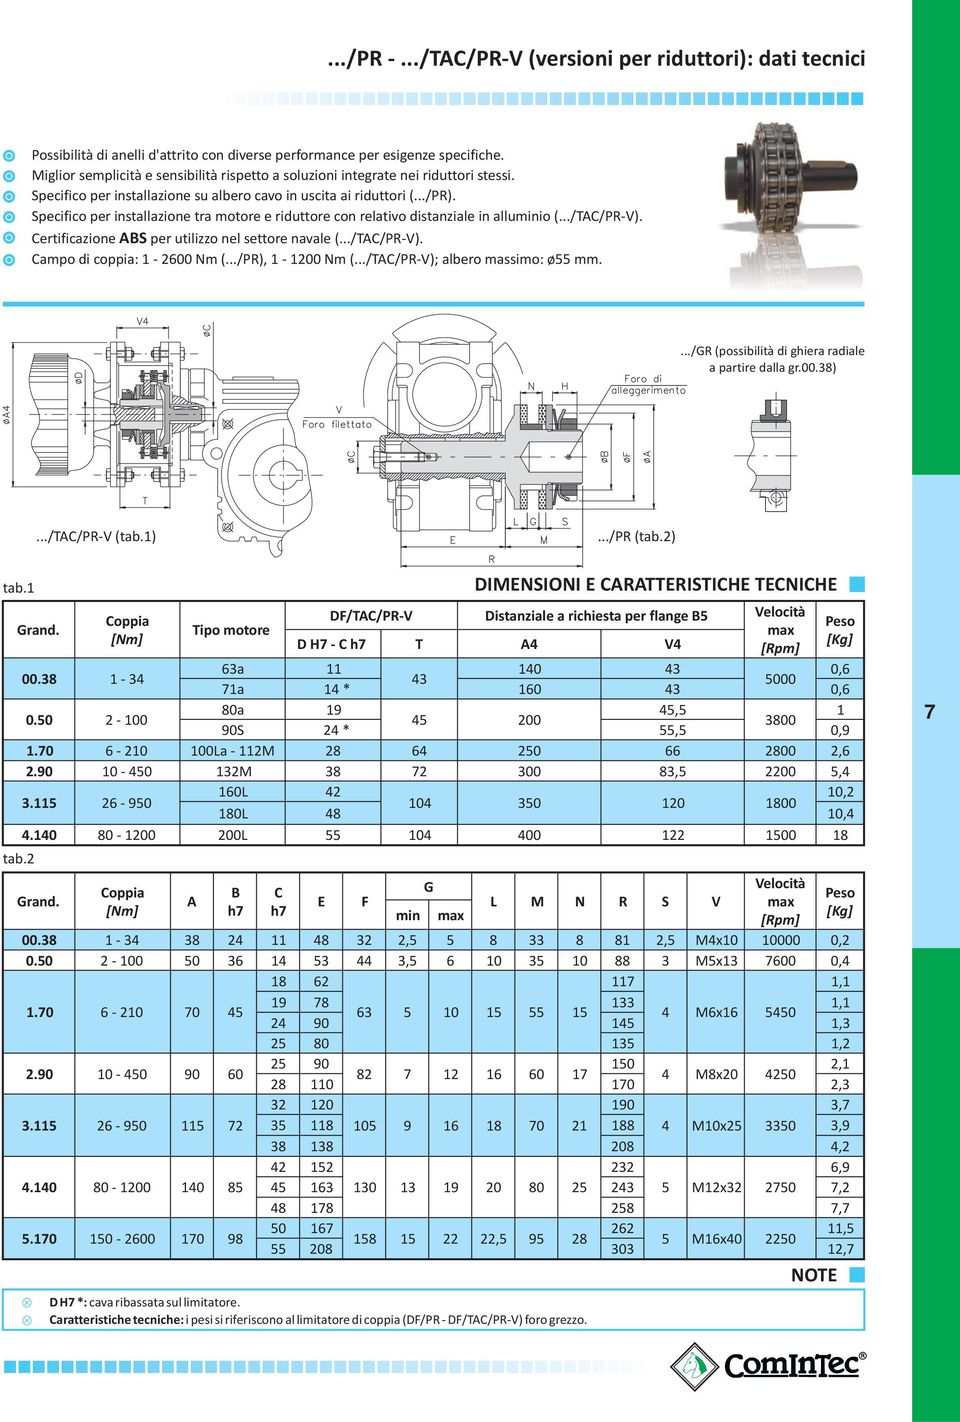 Specifico per installazione tra motore e riduttore con relativo distanziale in alluminio (.../TAC/PR-V). Certificazione ABS per utilizzo nel settore navale (.../TAC/PR-V). Campo di coppia: 1-2600 Nm (.